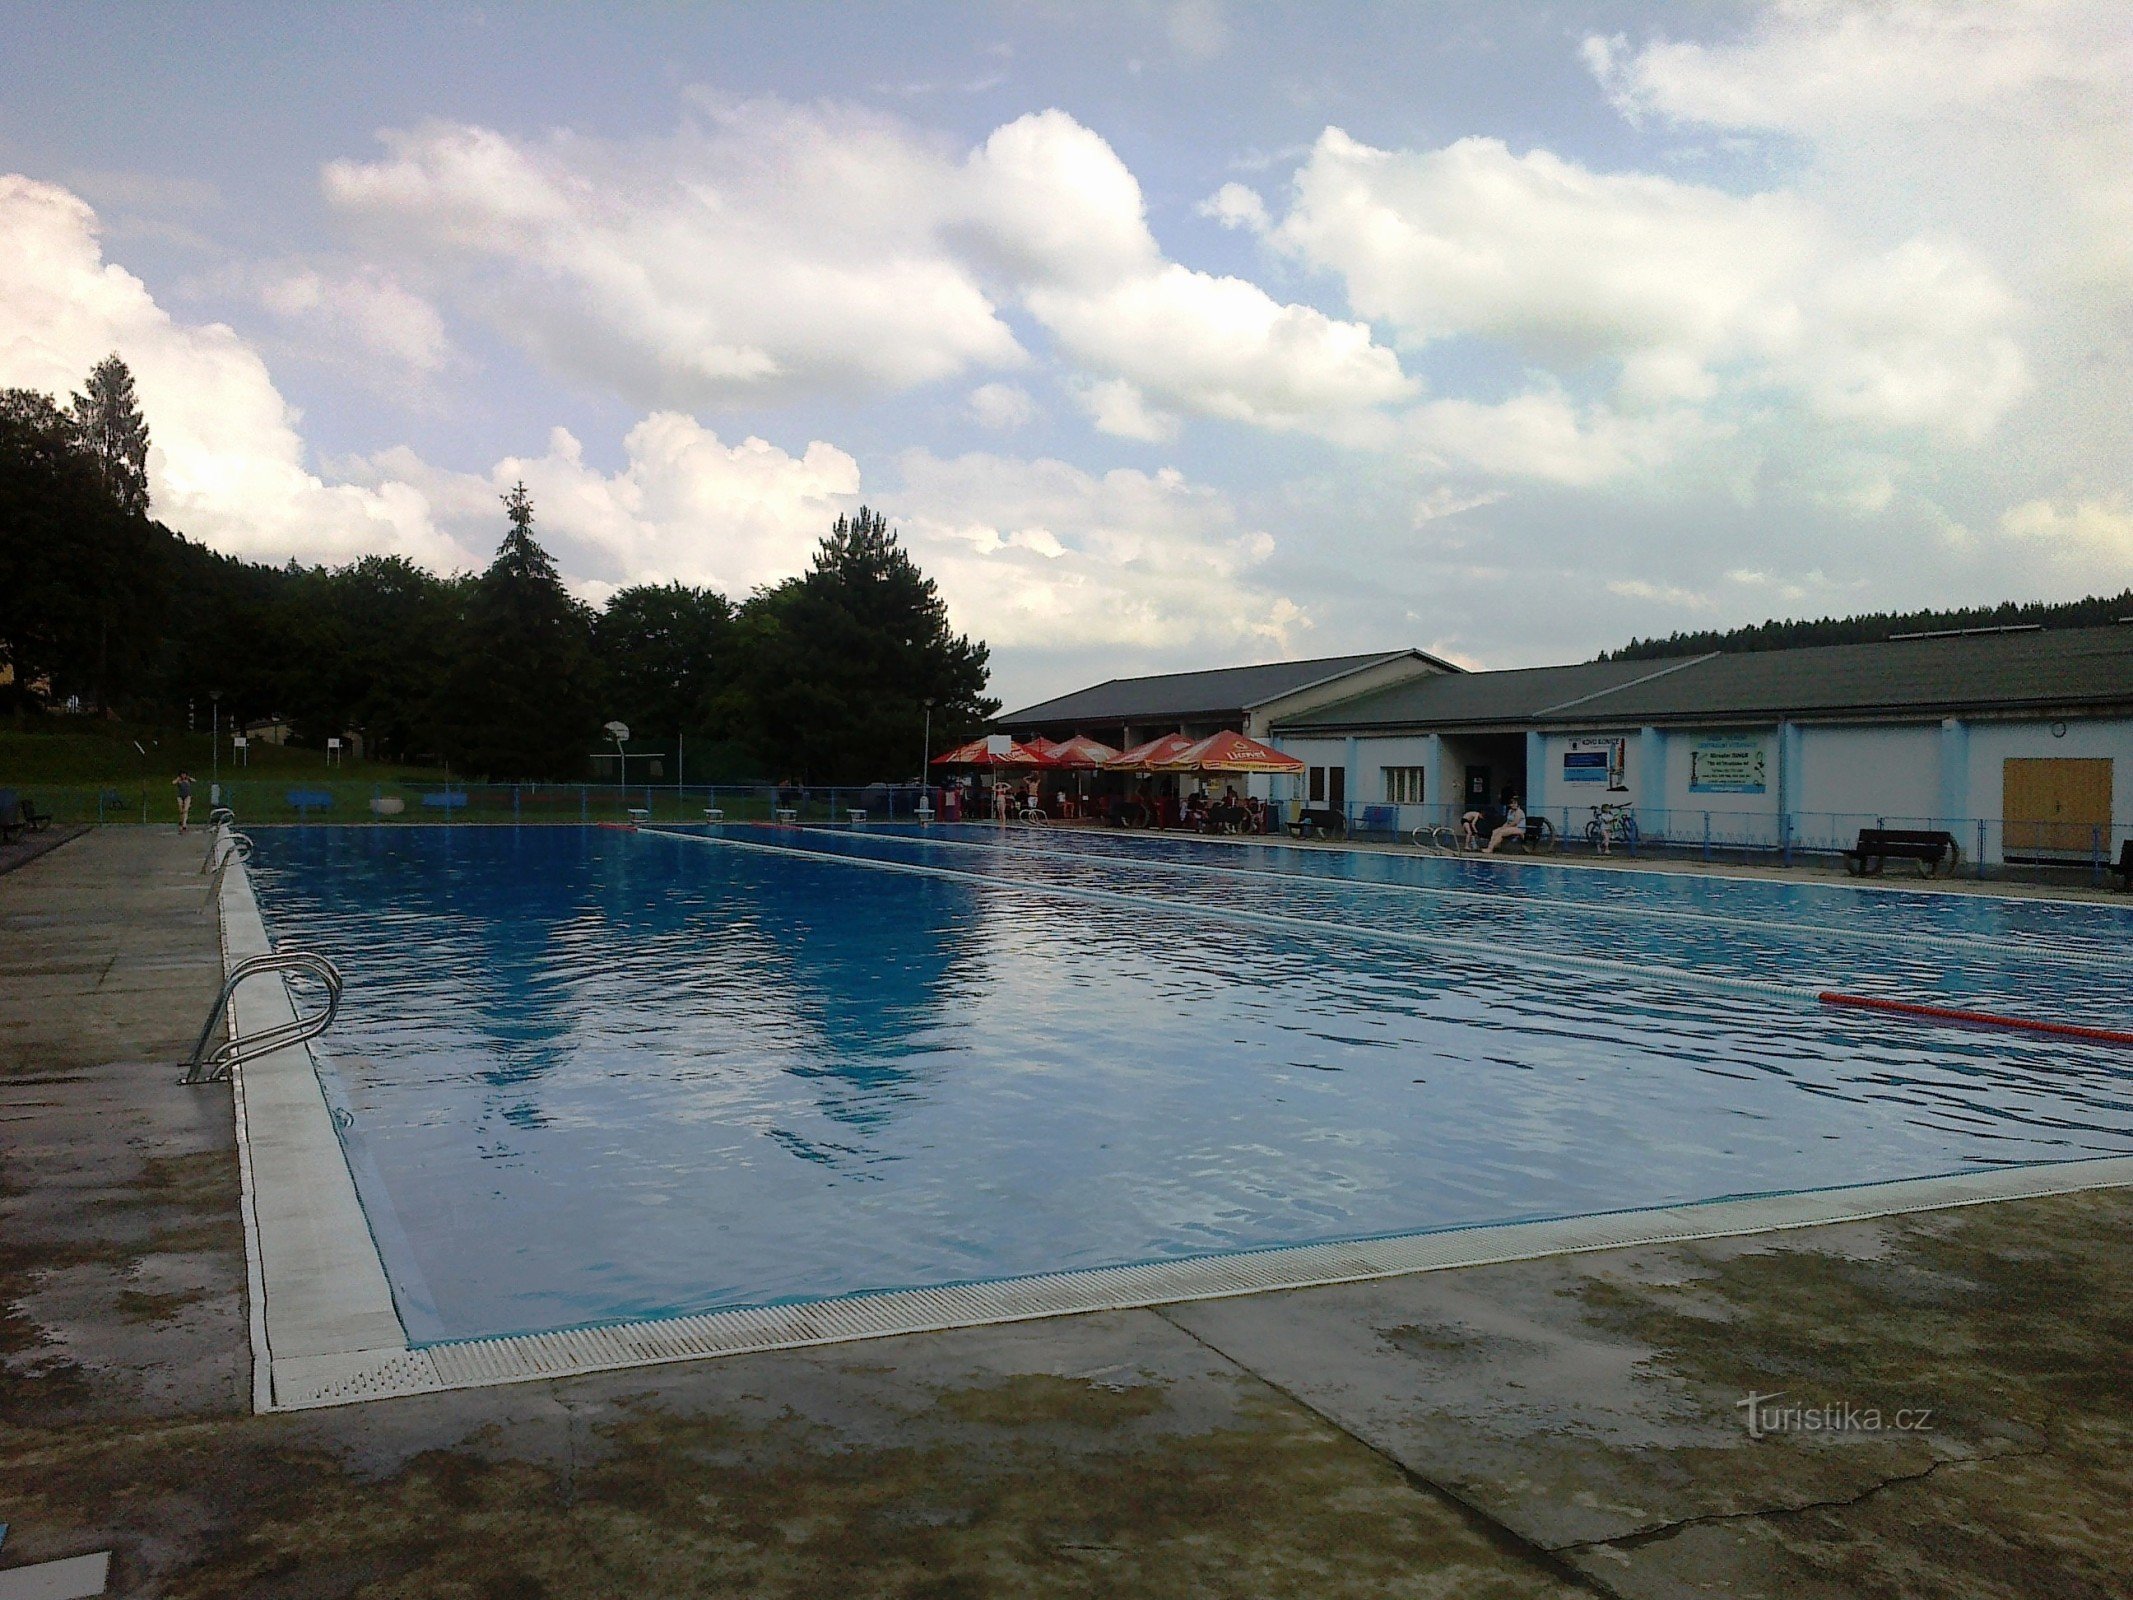 大型游泳池 I